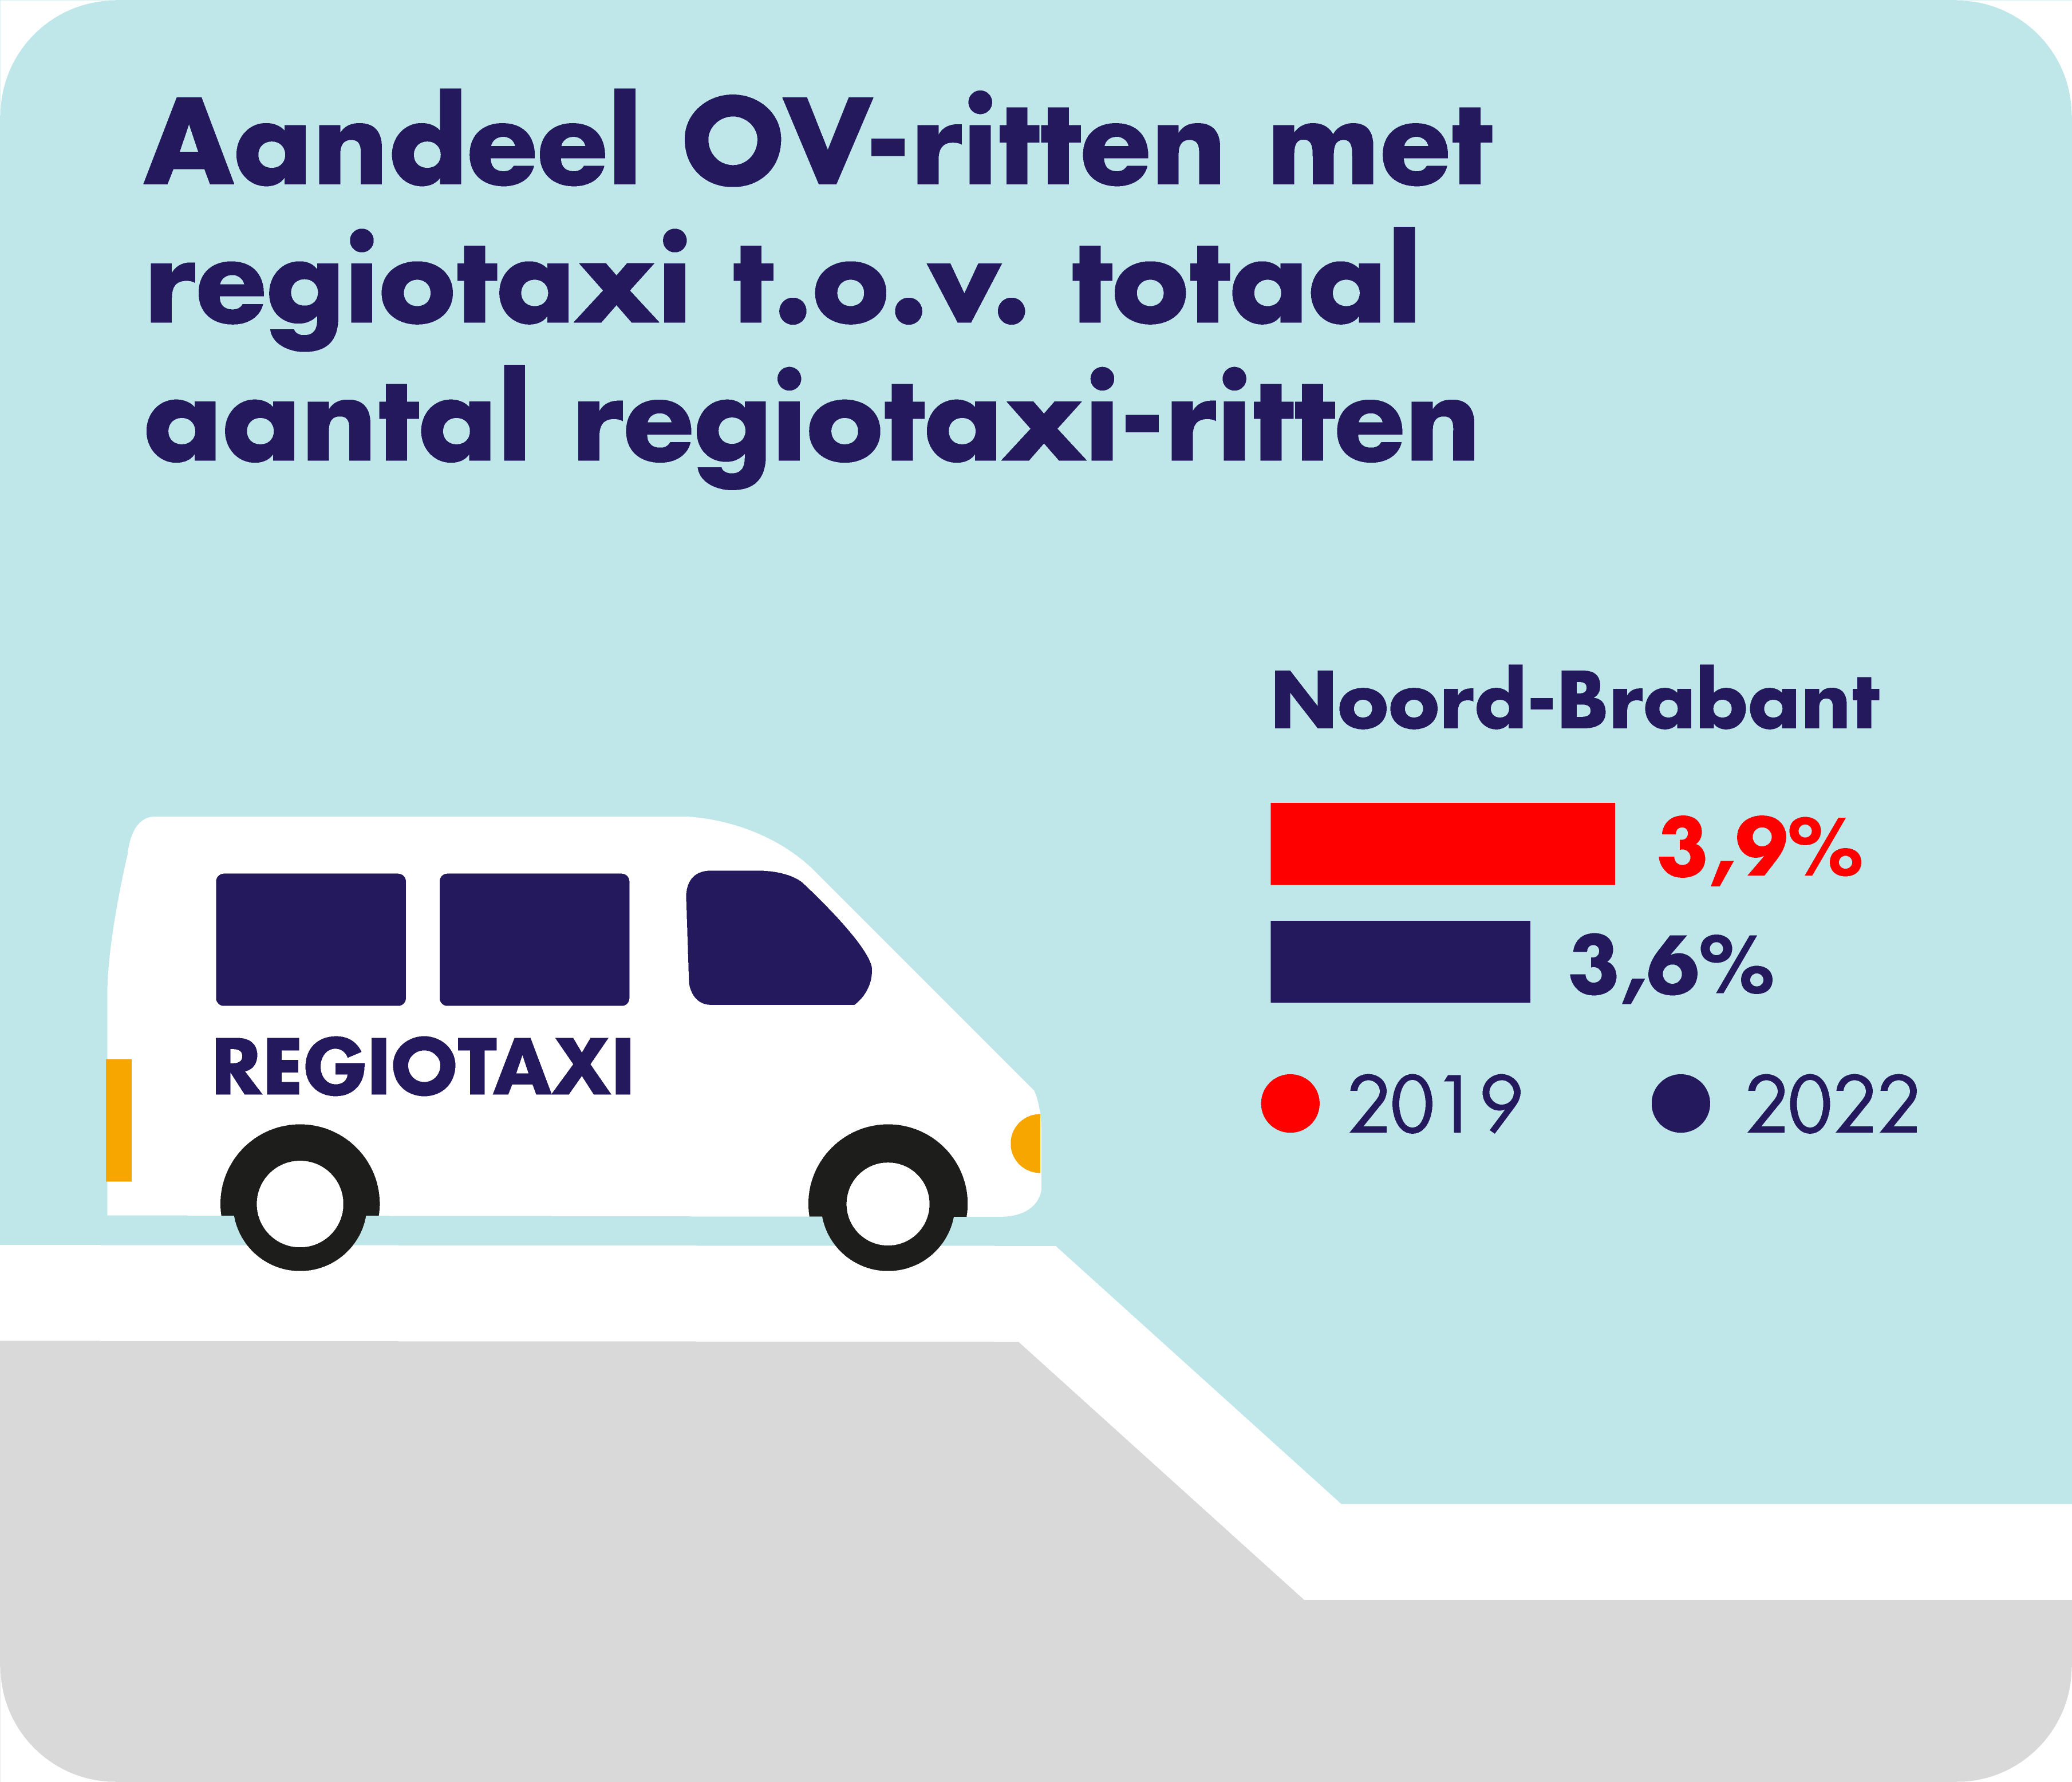 Op deze afbeelding is het aandeel van de OV-ritten met de regiotaxi ten opzichte van het totaal aantal regiotaxi-ritten weergegeven. In 2019 was dit 3,9% en in 2022 was dit 3,6% in heel Noord-Brabant. 